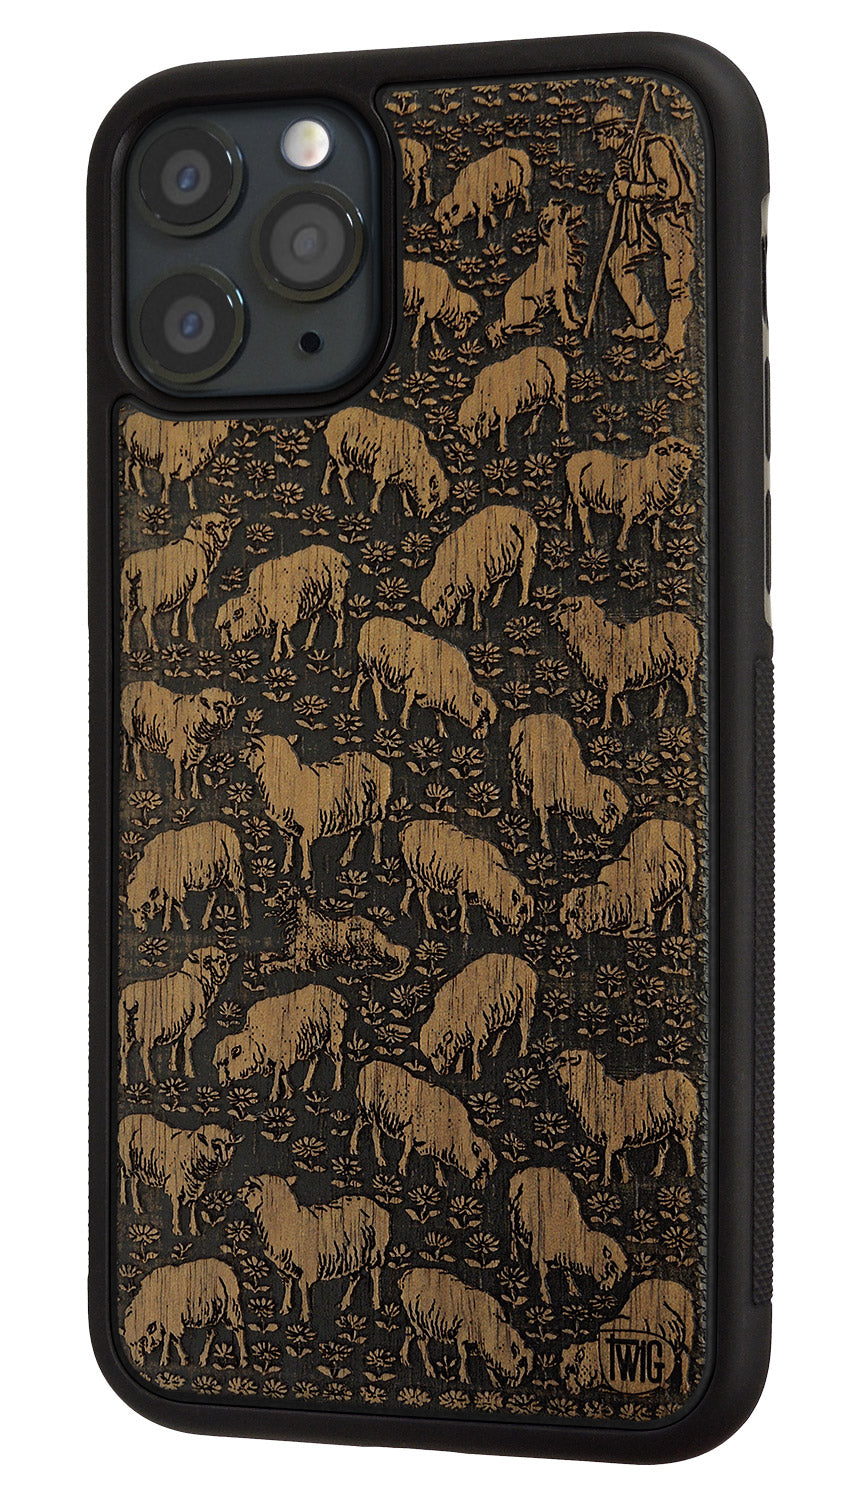 Sheepish -  Walnut iPhone Case, iPhone Case - Twig Case Co.